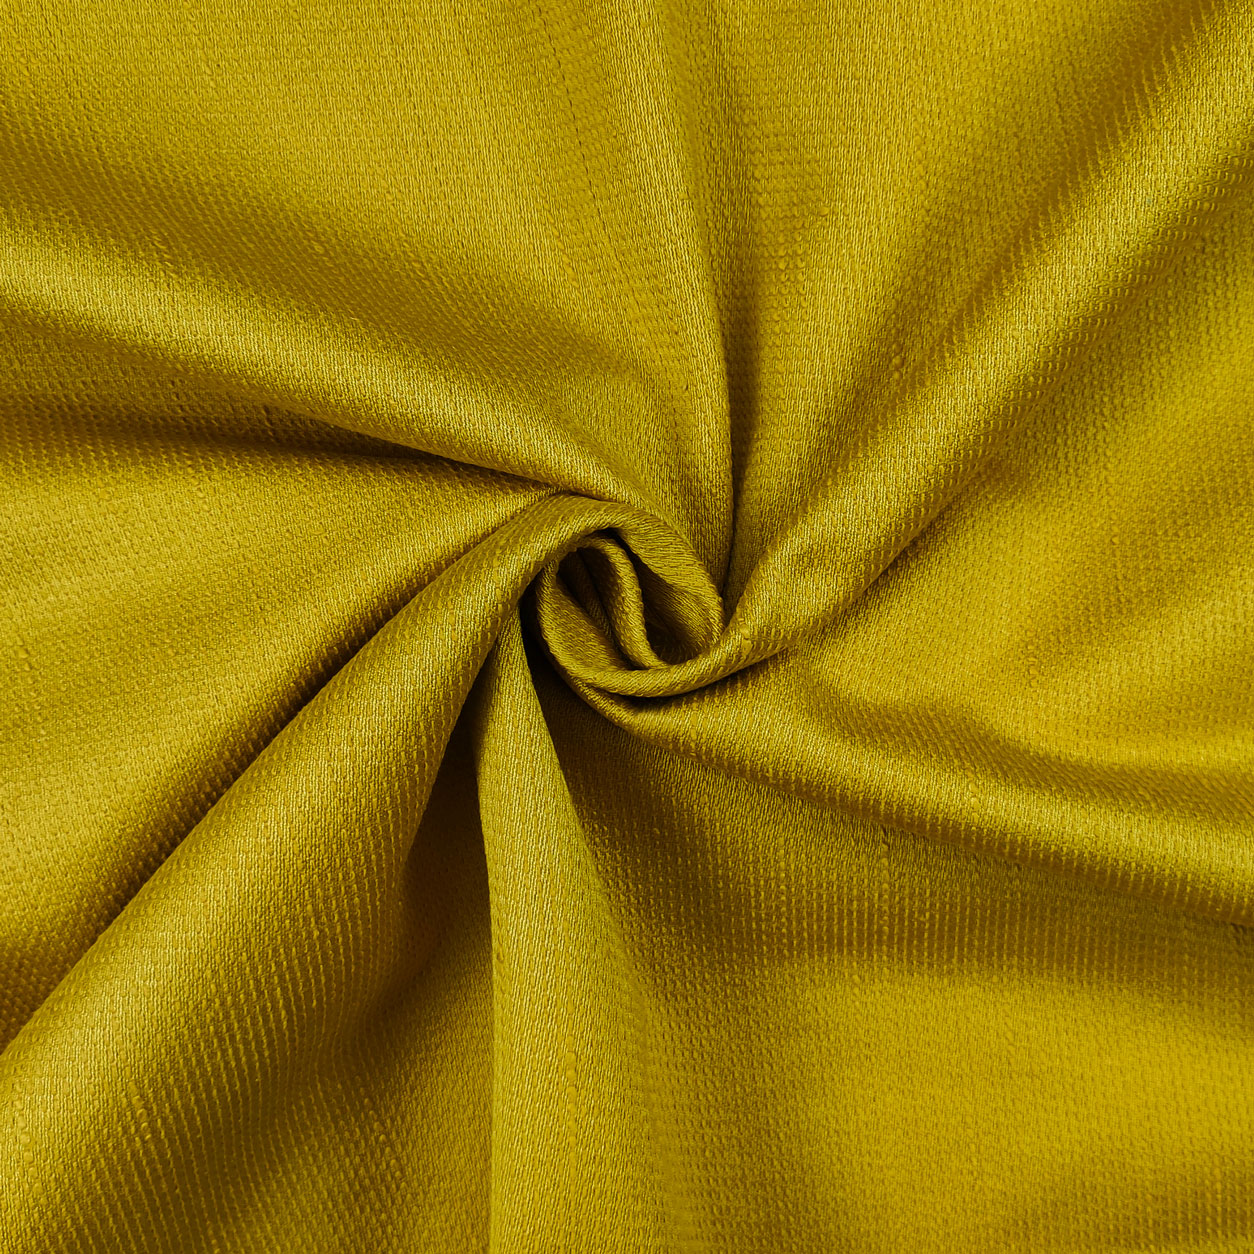 tessuto-bourette-seta-giallo-oro